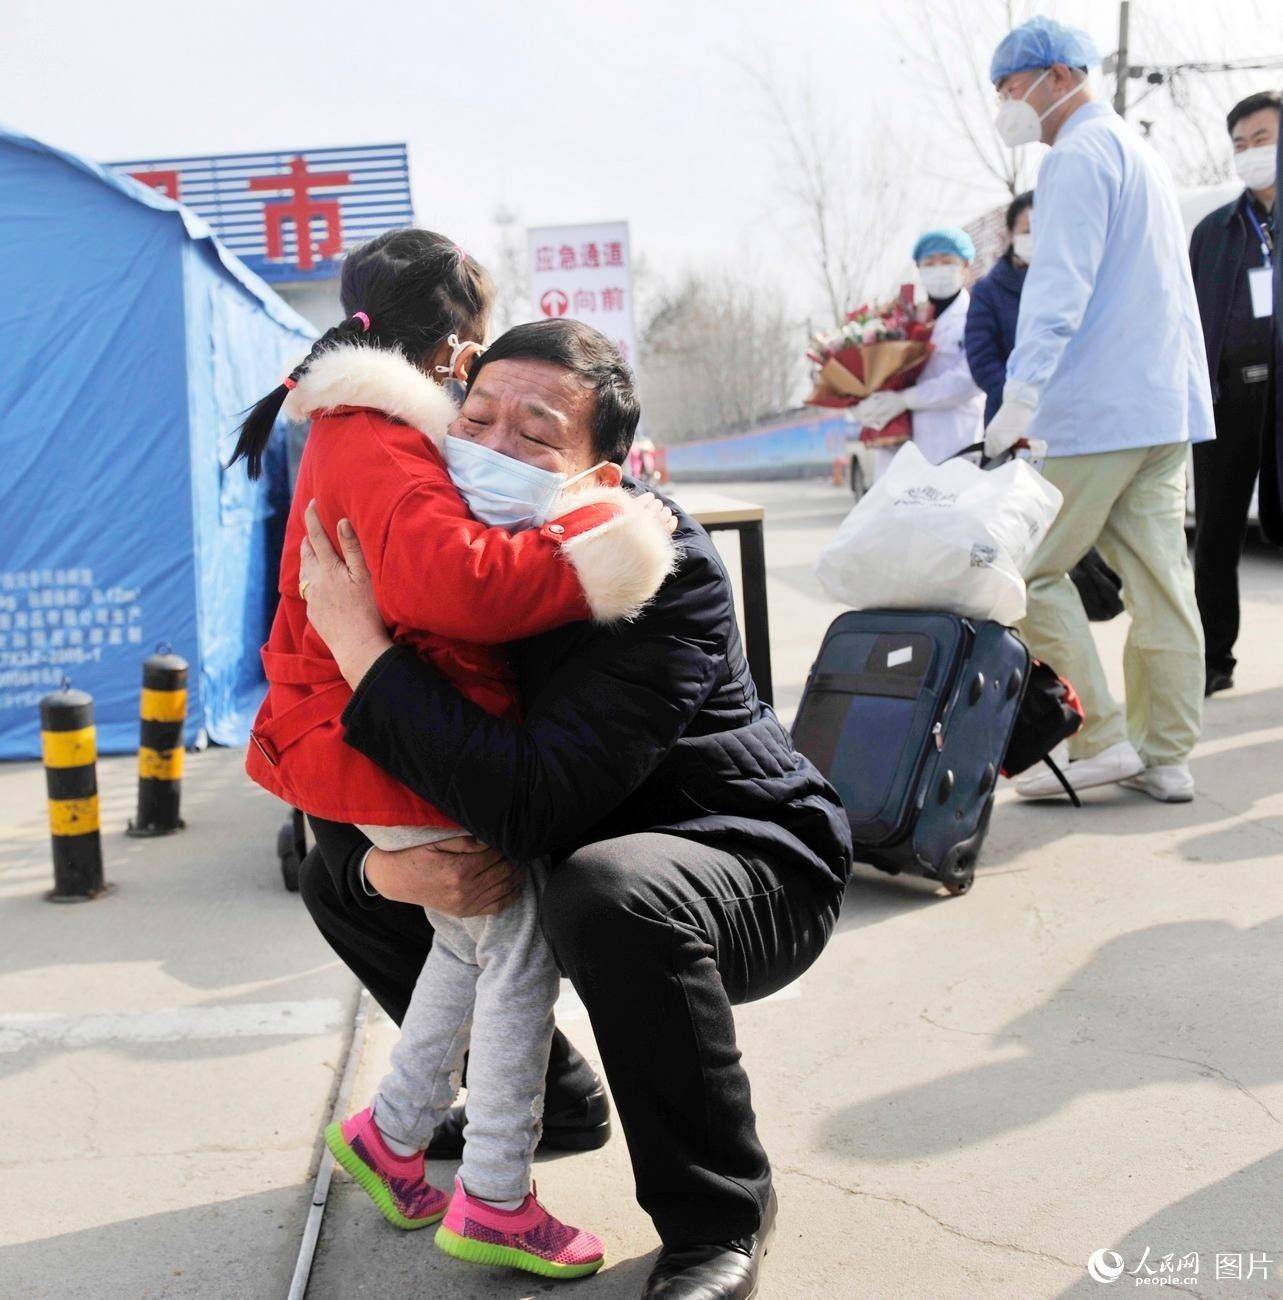 5세 어린이 환자가 건강을 회복하고 퇴원해 가족과 부둥켜안고 있다. [사진 출처: 인민망]